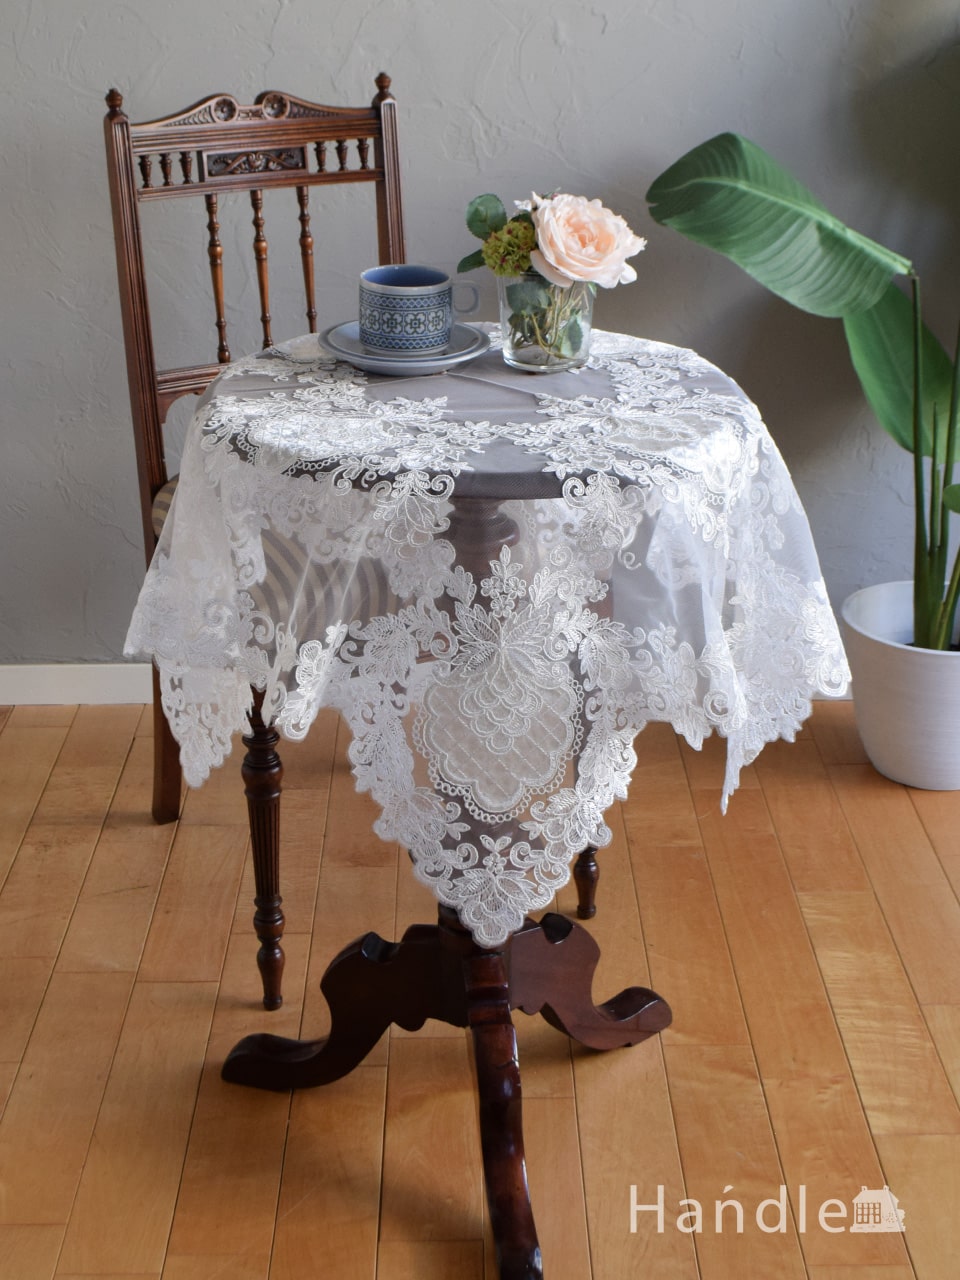 フランスアンティーク風のおしゃれなテーブルクロス、女子力高い刺繍の入ったテーブルマット